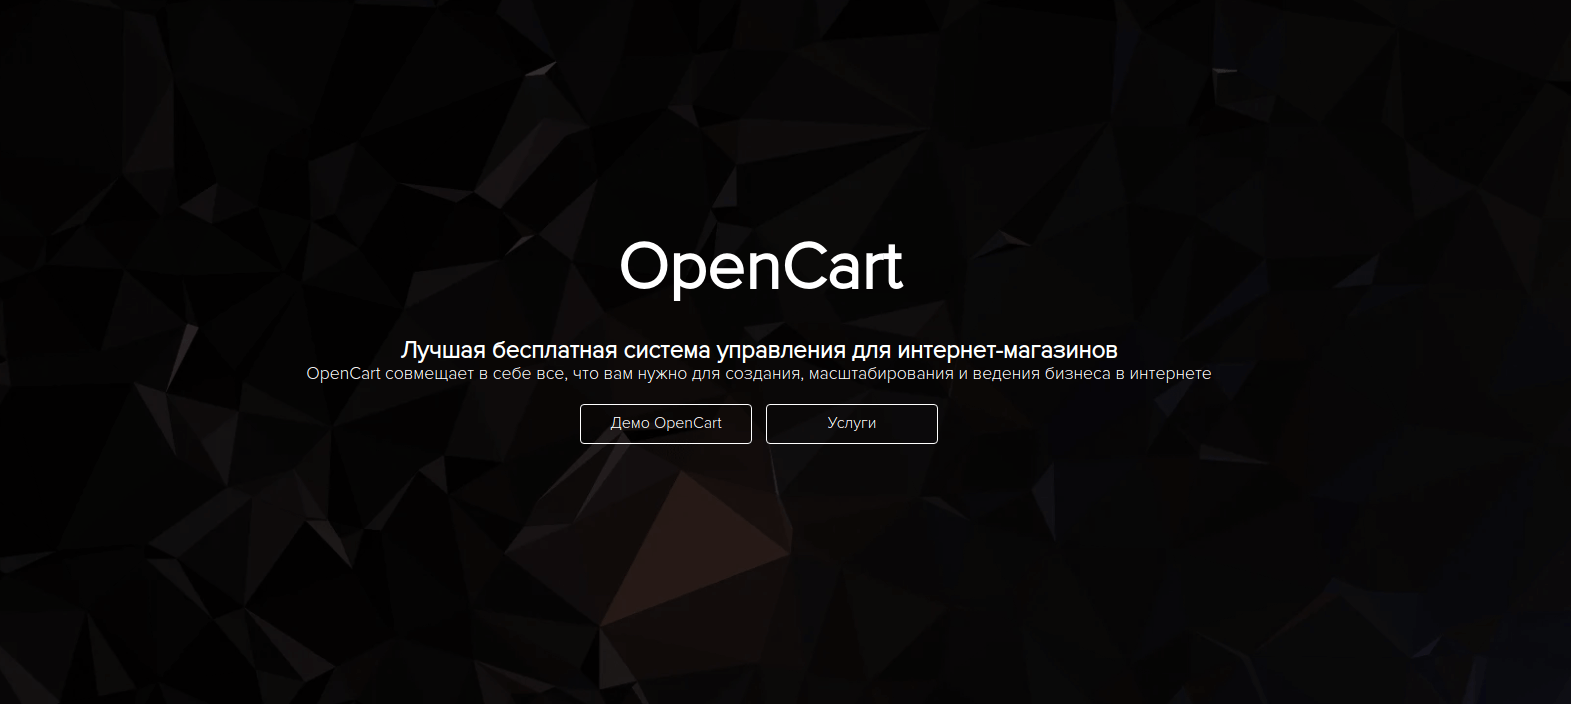 OpenCart - Лучшая бесплатная система управления для интернет-магазинов